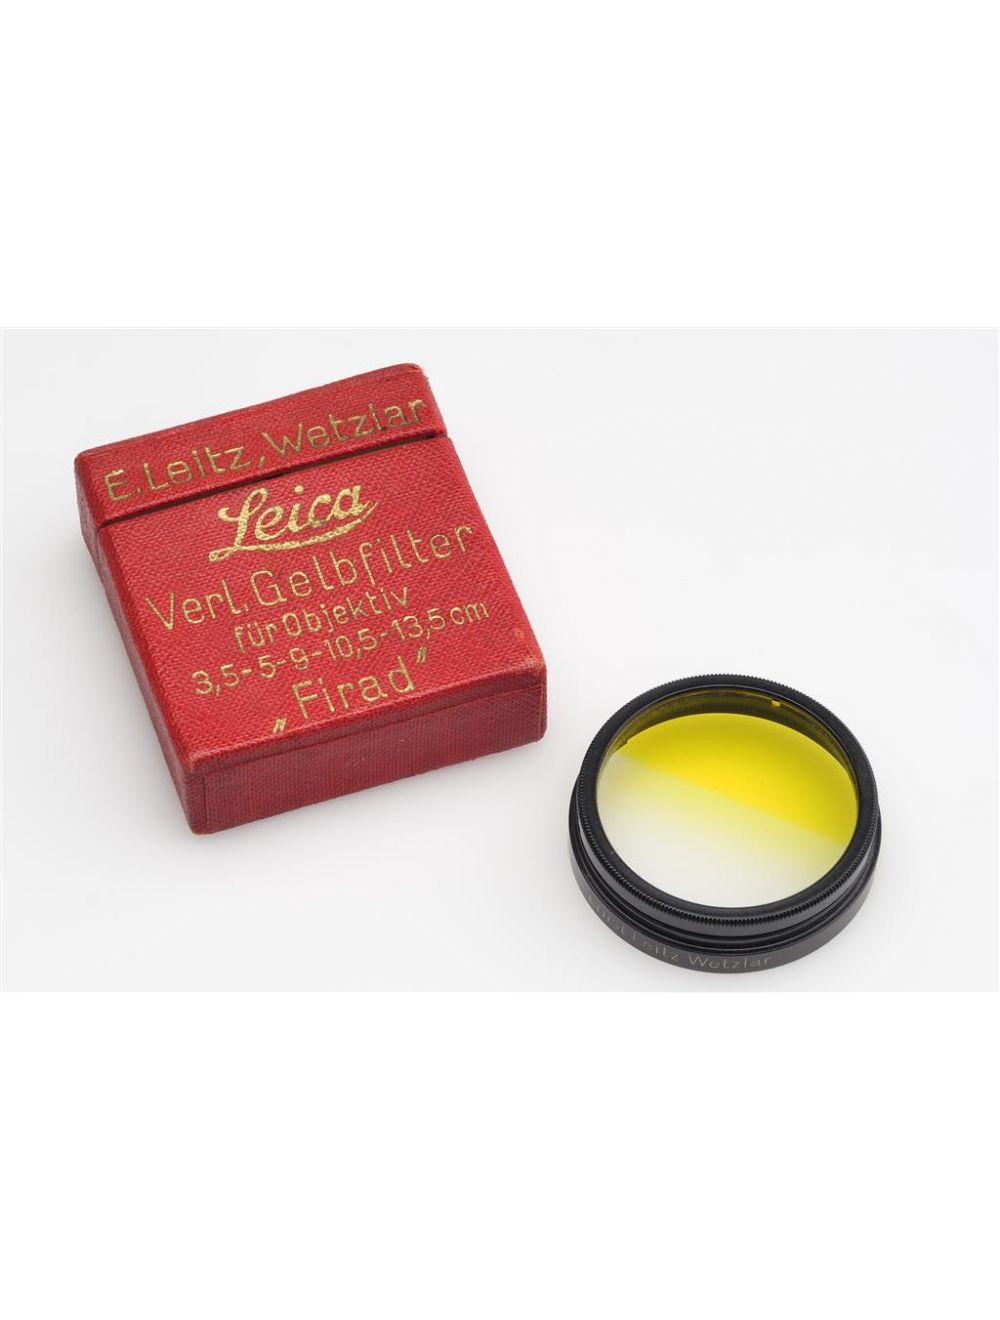 Observeer Publicatie vingerafdruk Leitz Leica FIRAD A36 Graduated Yellow Filter w. Box | JO GEIER - MINT &  RARE